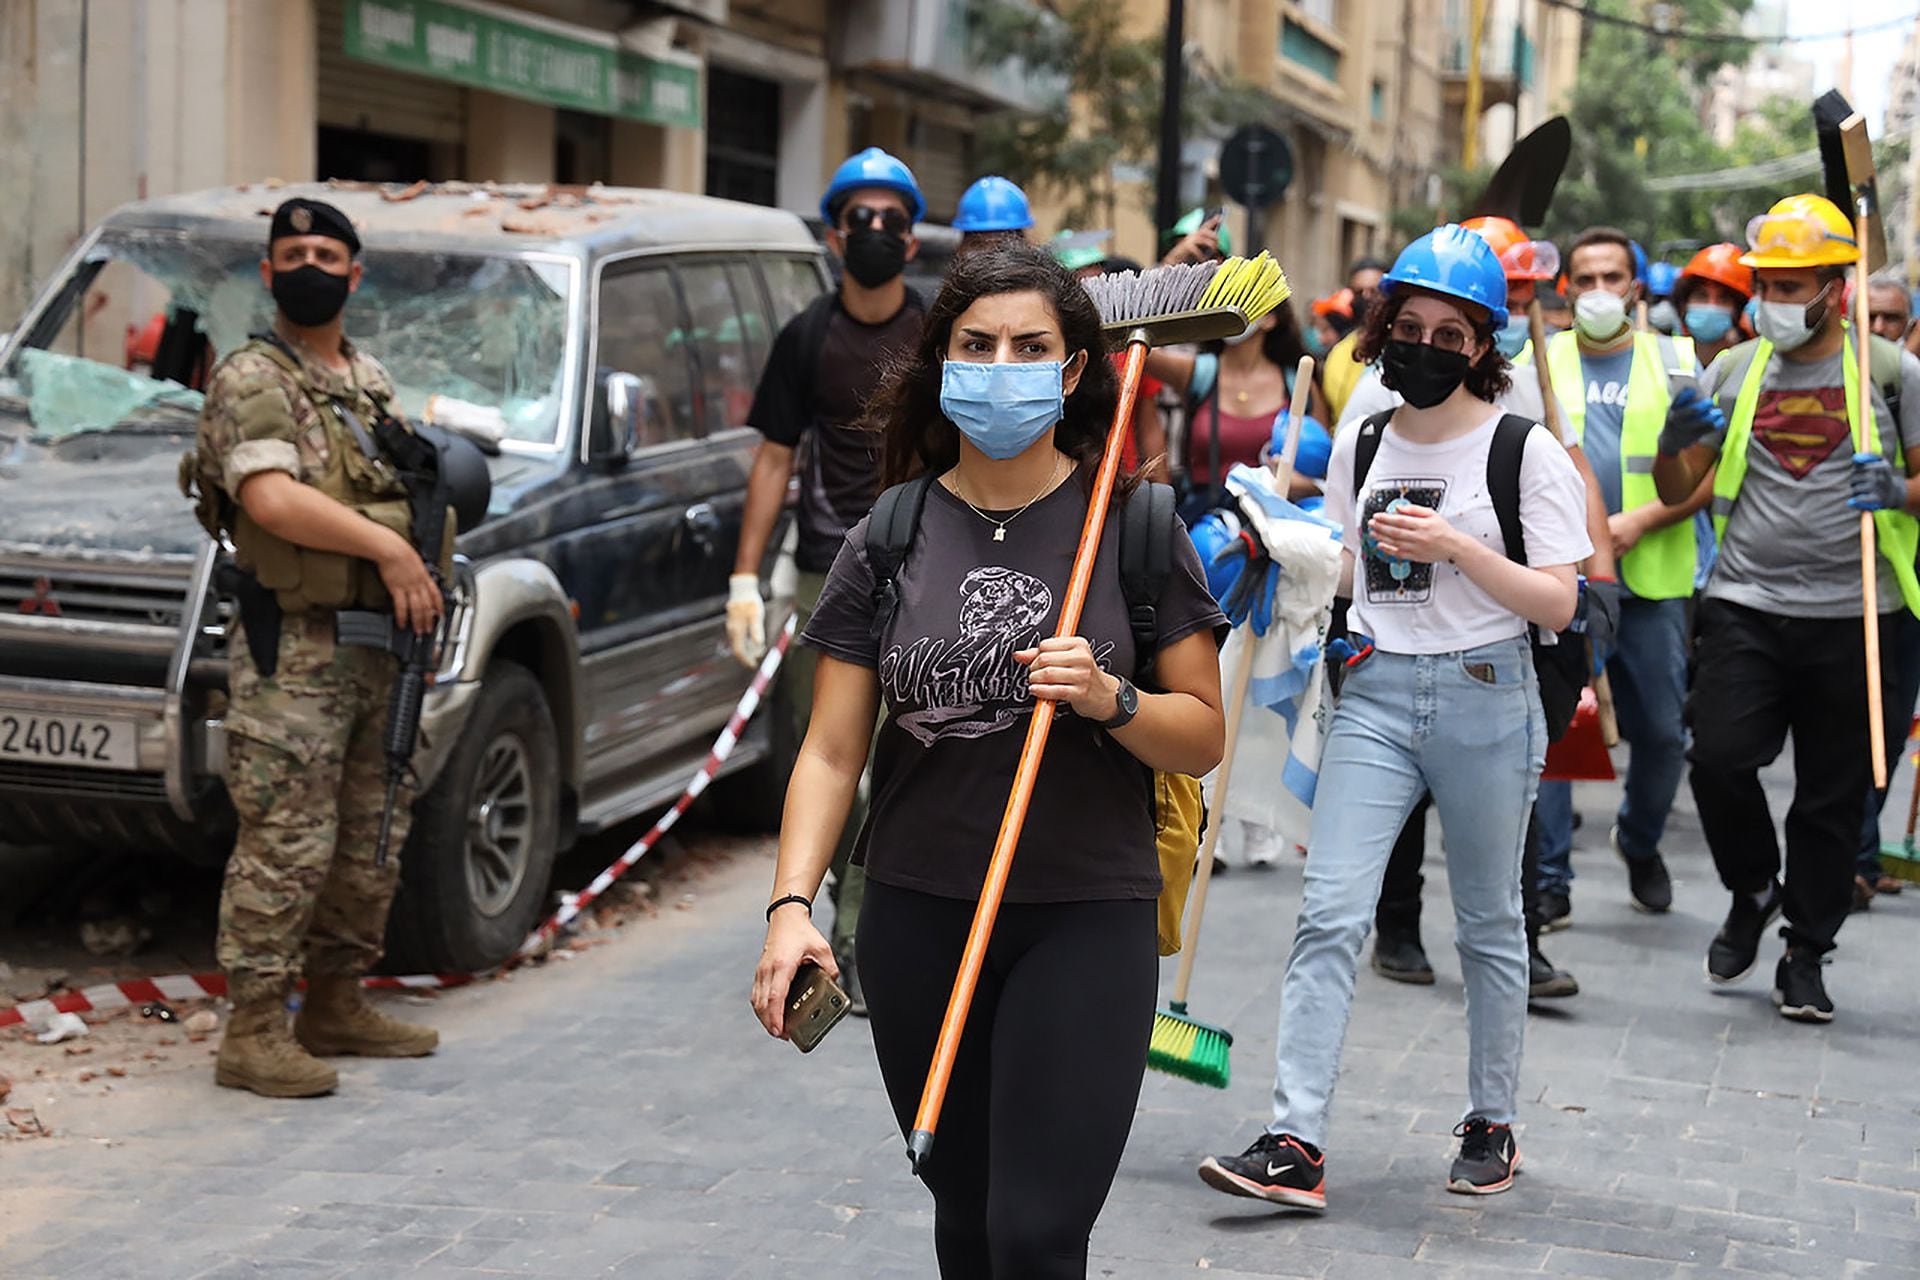 Justo después de las 6 pm del martes 4 de agosto, una catastrófica explosión arrasó Beirut, dejando al menos 100 muertos y más de 4.000 heridos